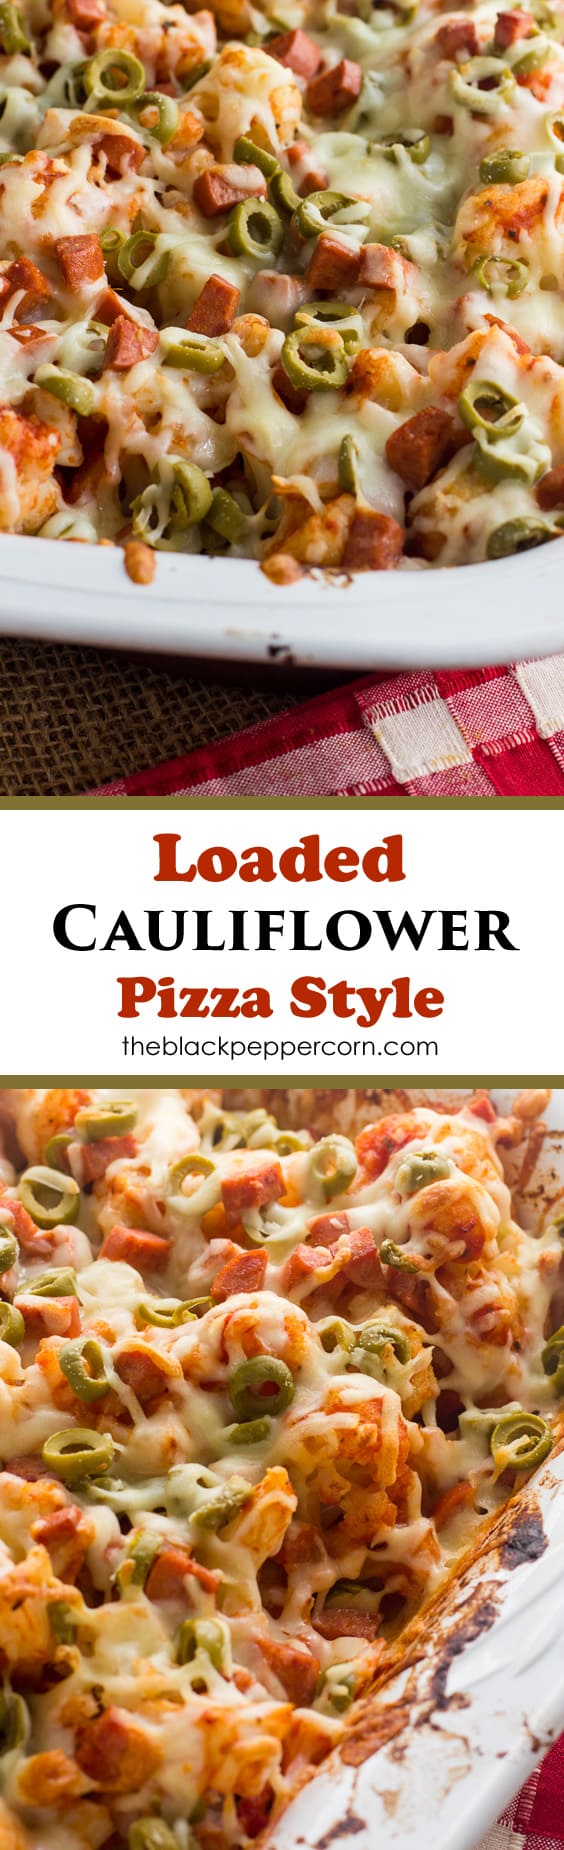 cauliflower casserole pizza pepperoni green olives mozzarella